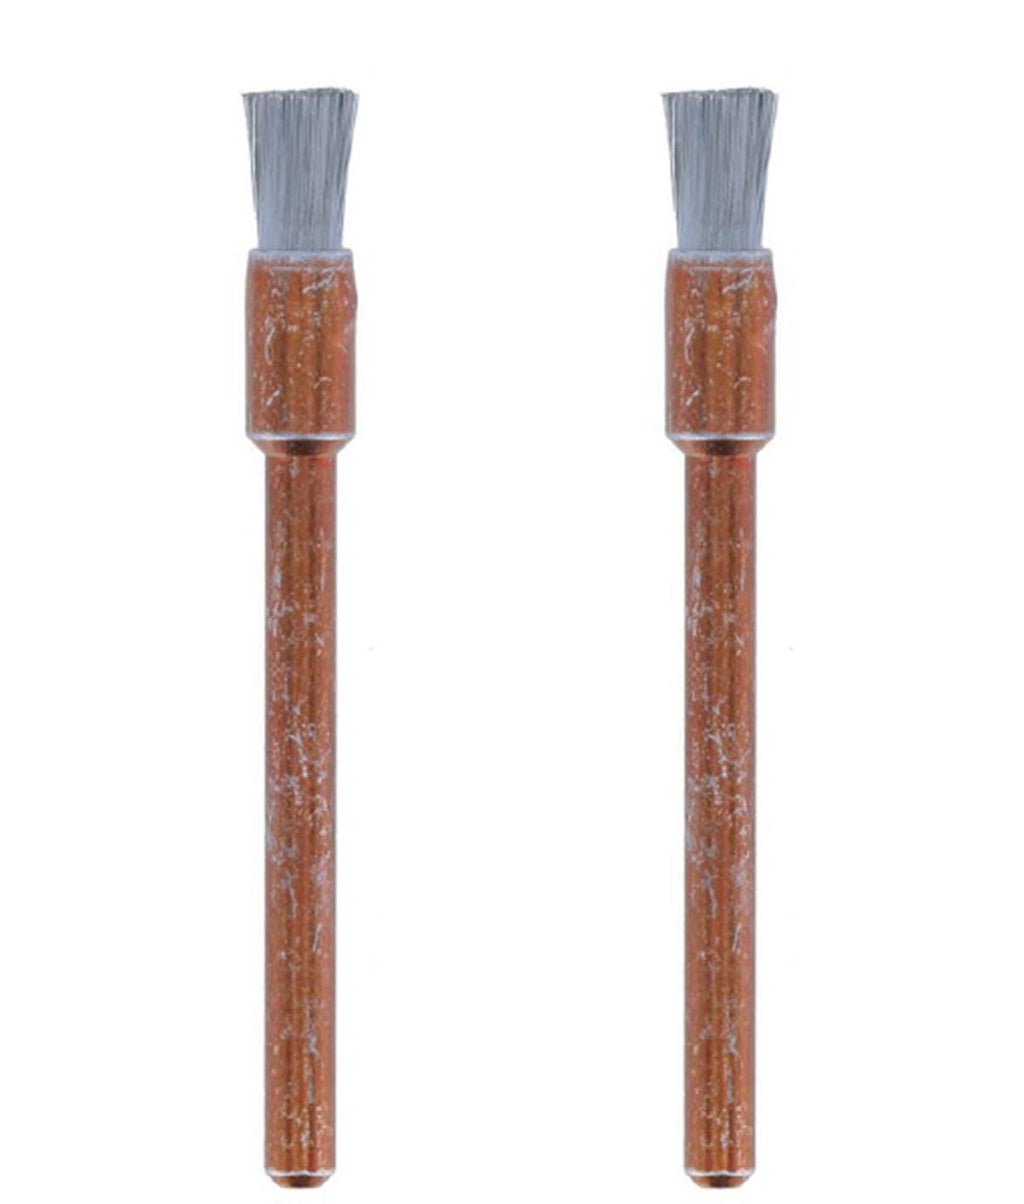 Dremel 532-02 Stainless Steel Brushes (2 Pack), 1/8"